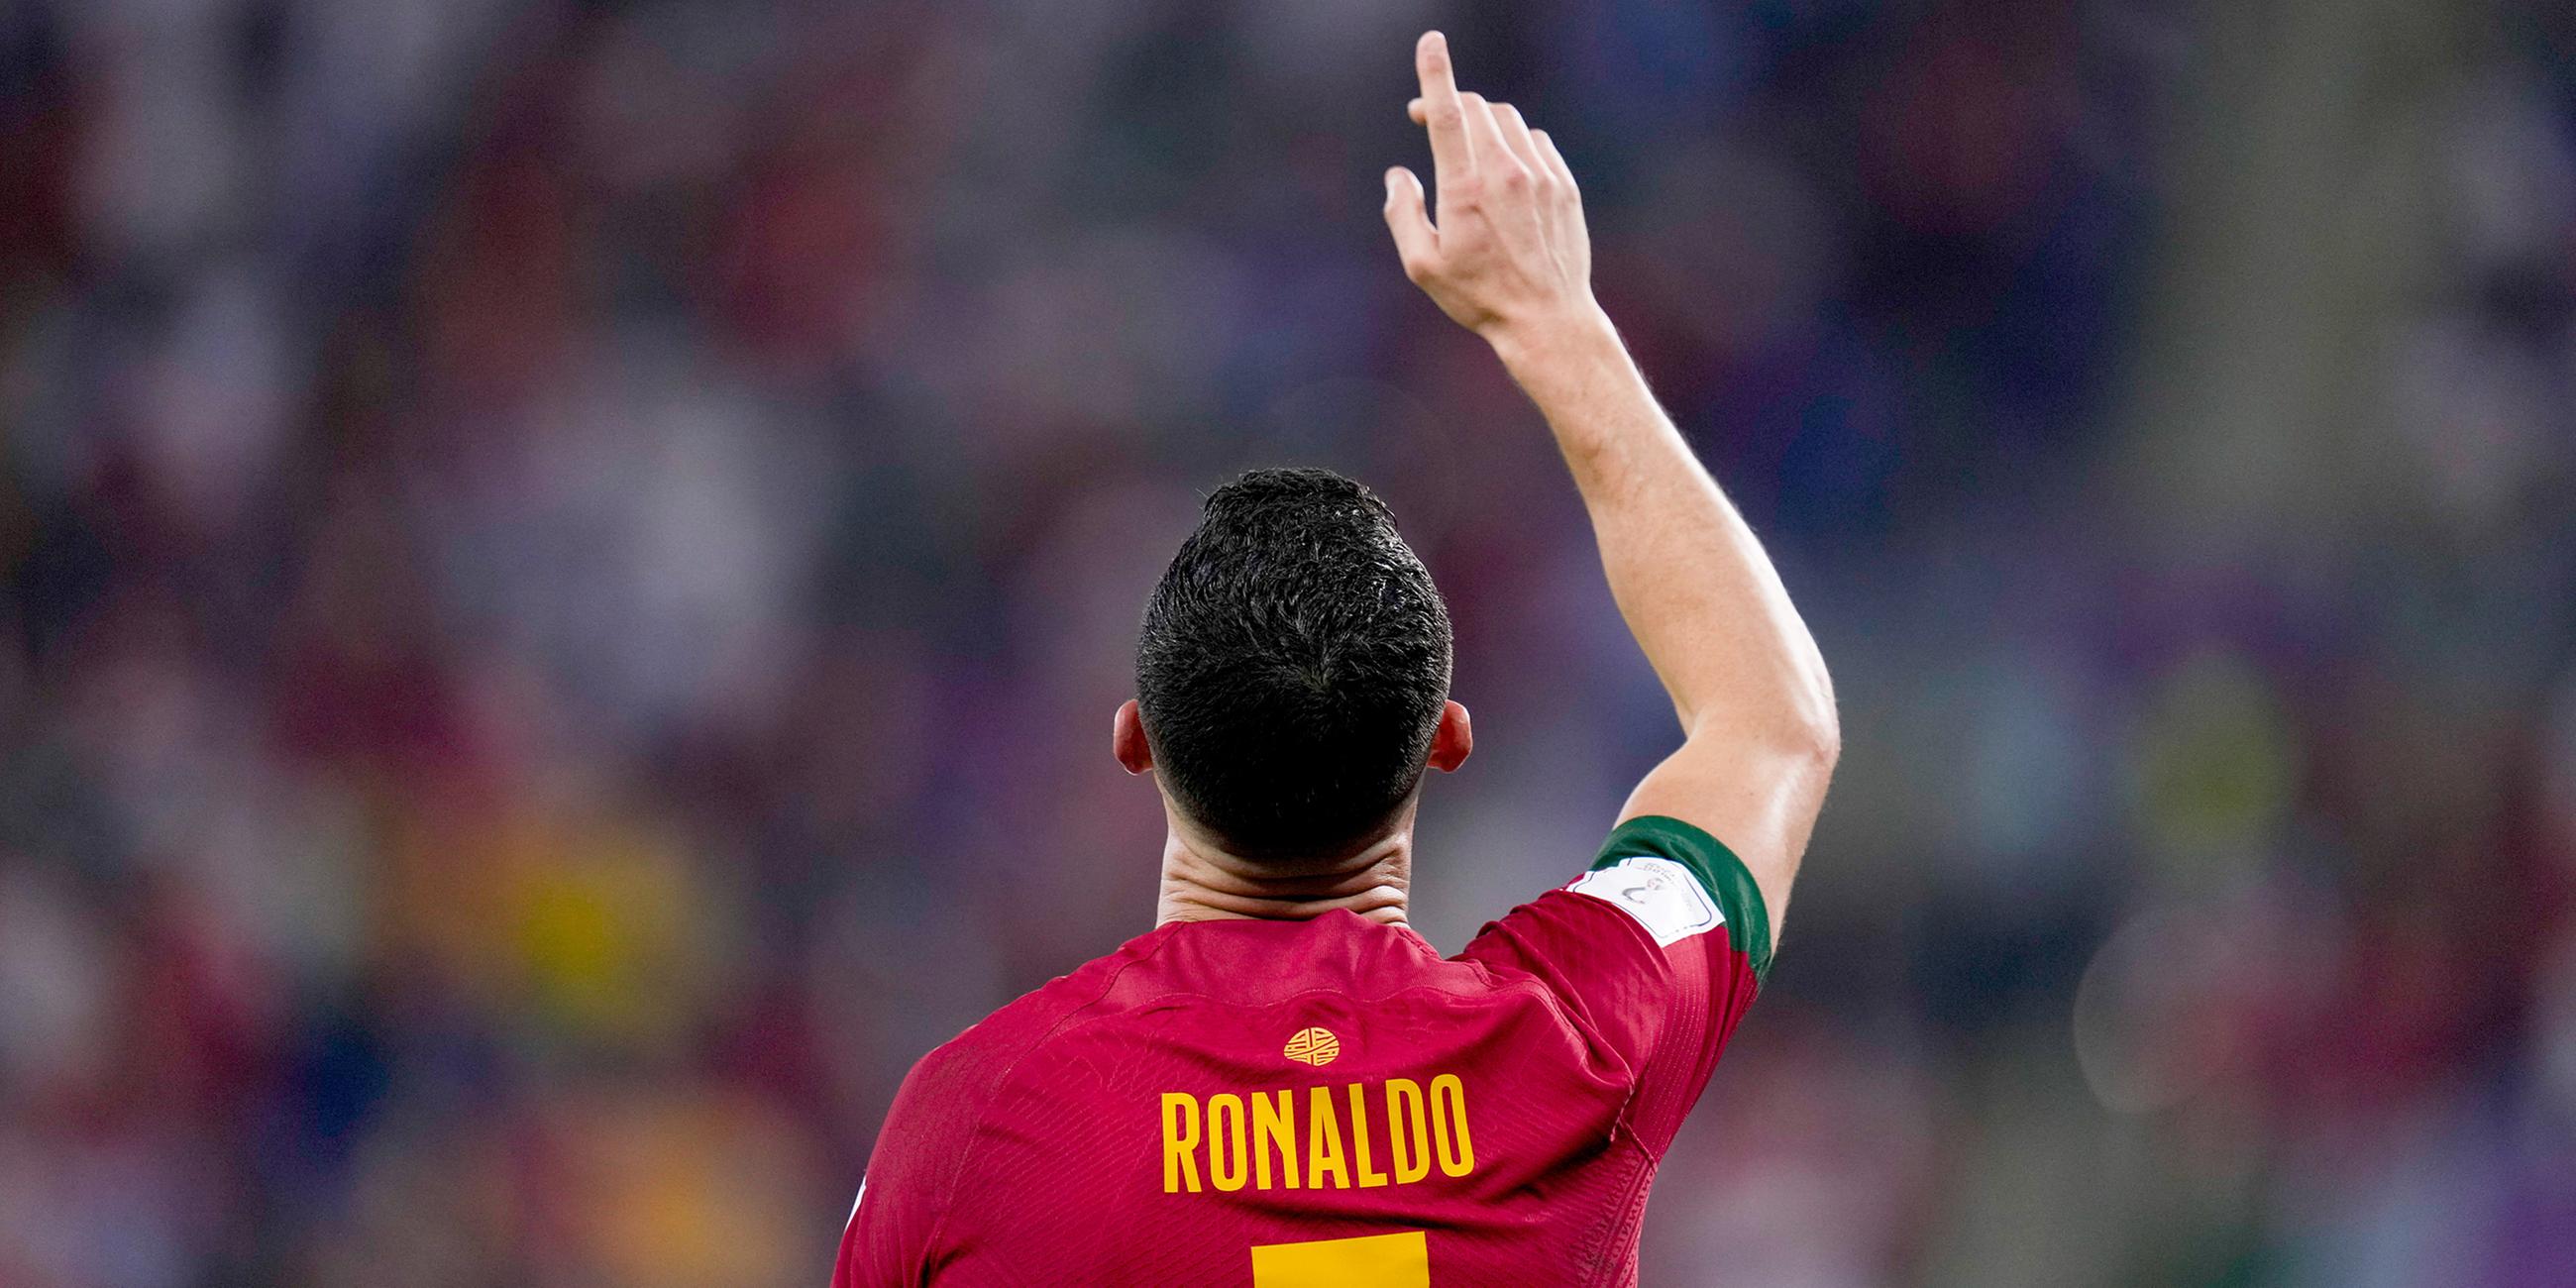 Christiano Ronaldo (Portugal) feiert sein Tor gegen Ghana in der Vorrunde der Gruppe H am 24.11.2022.